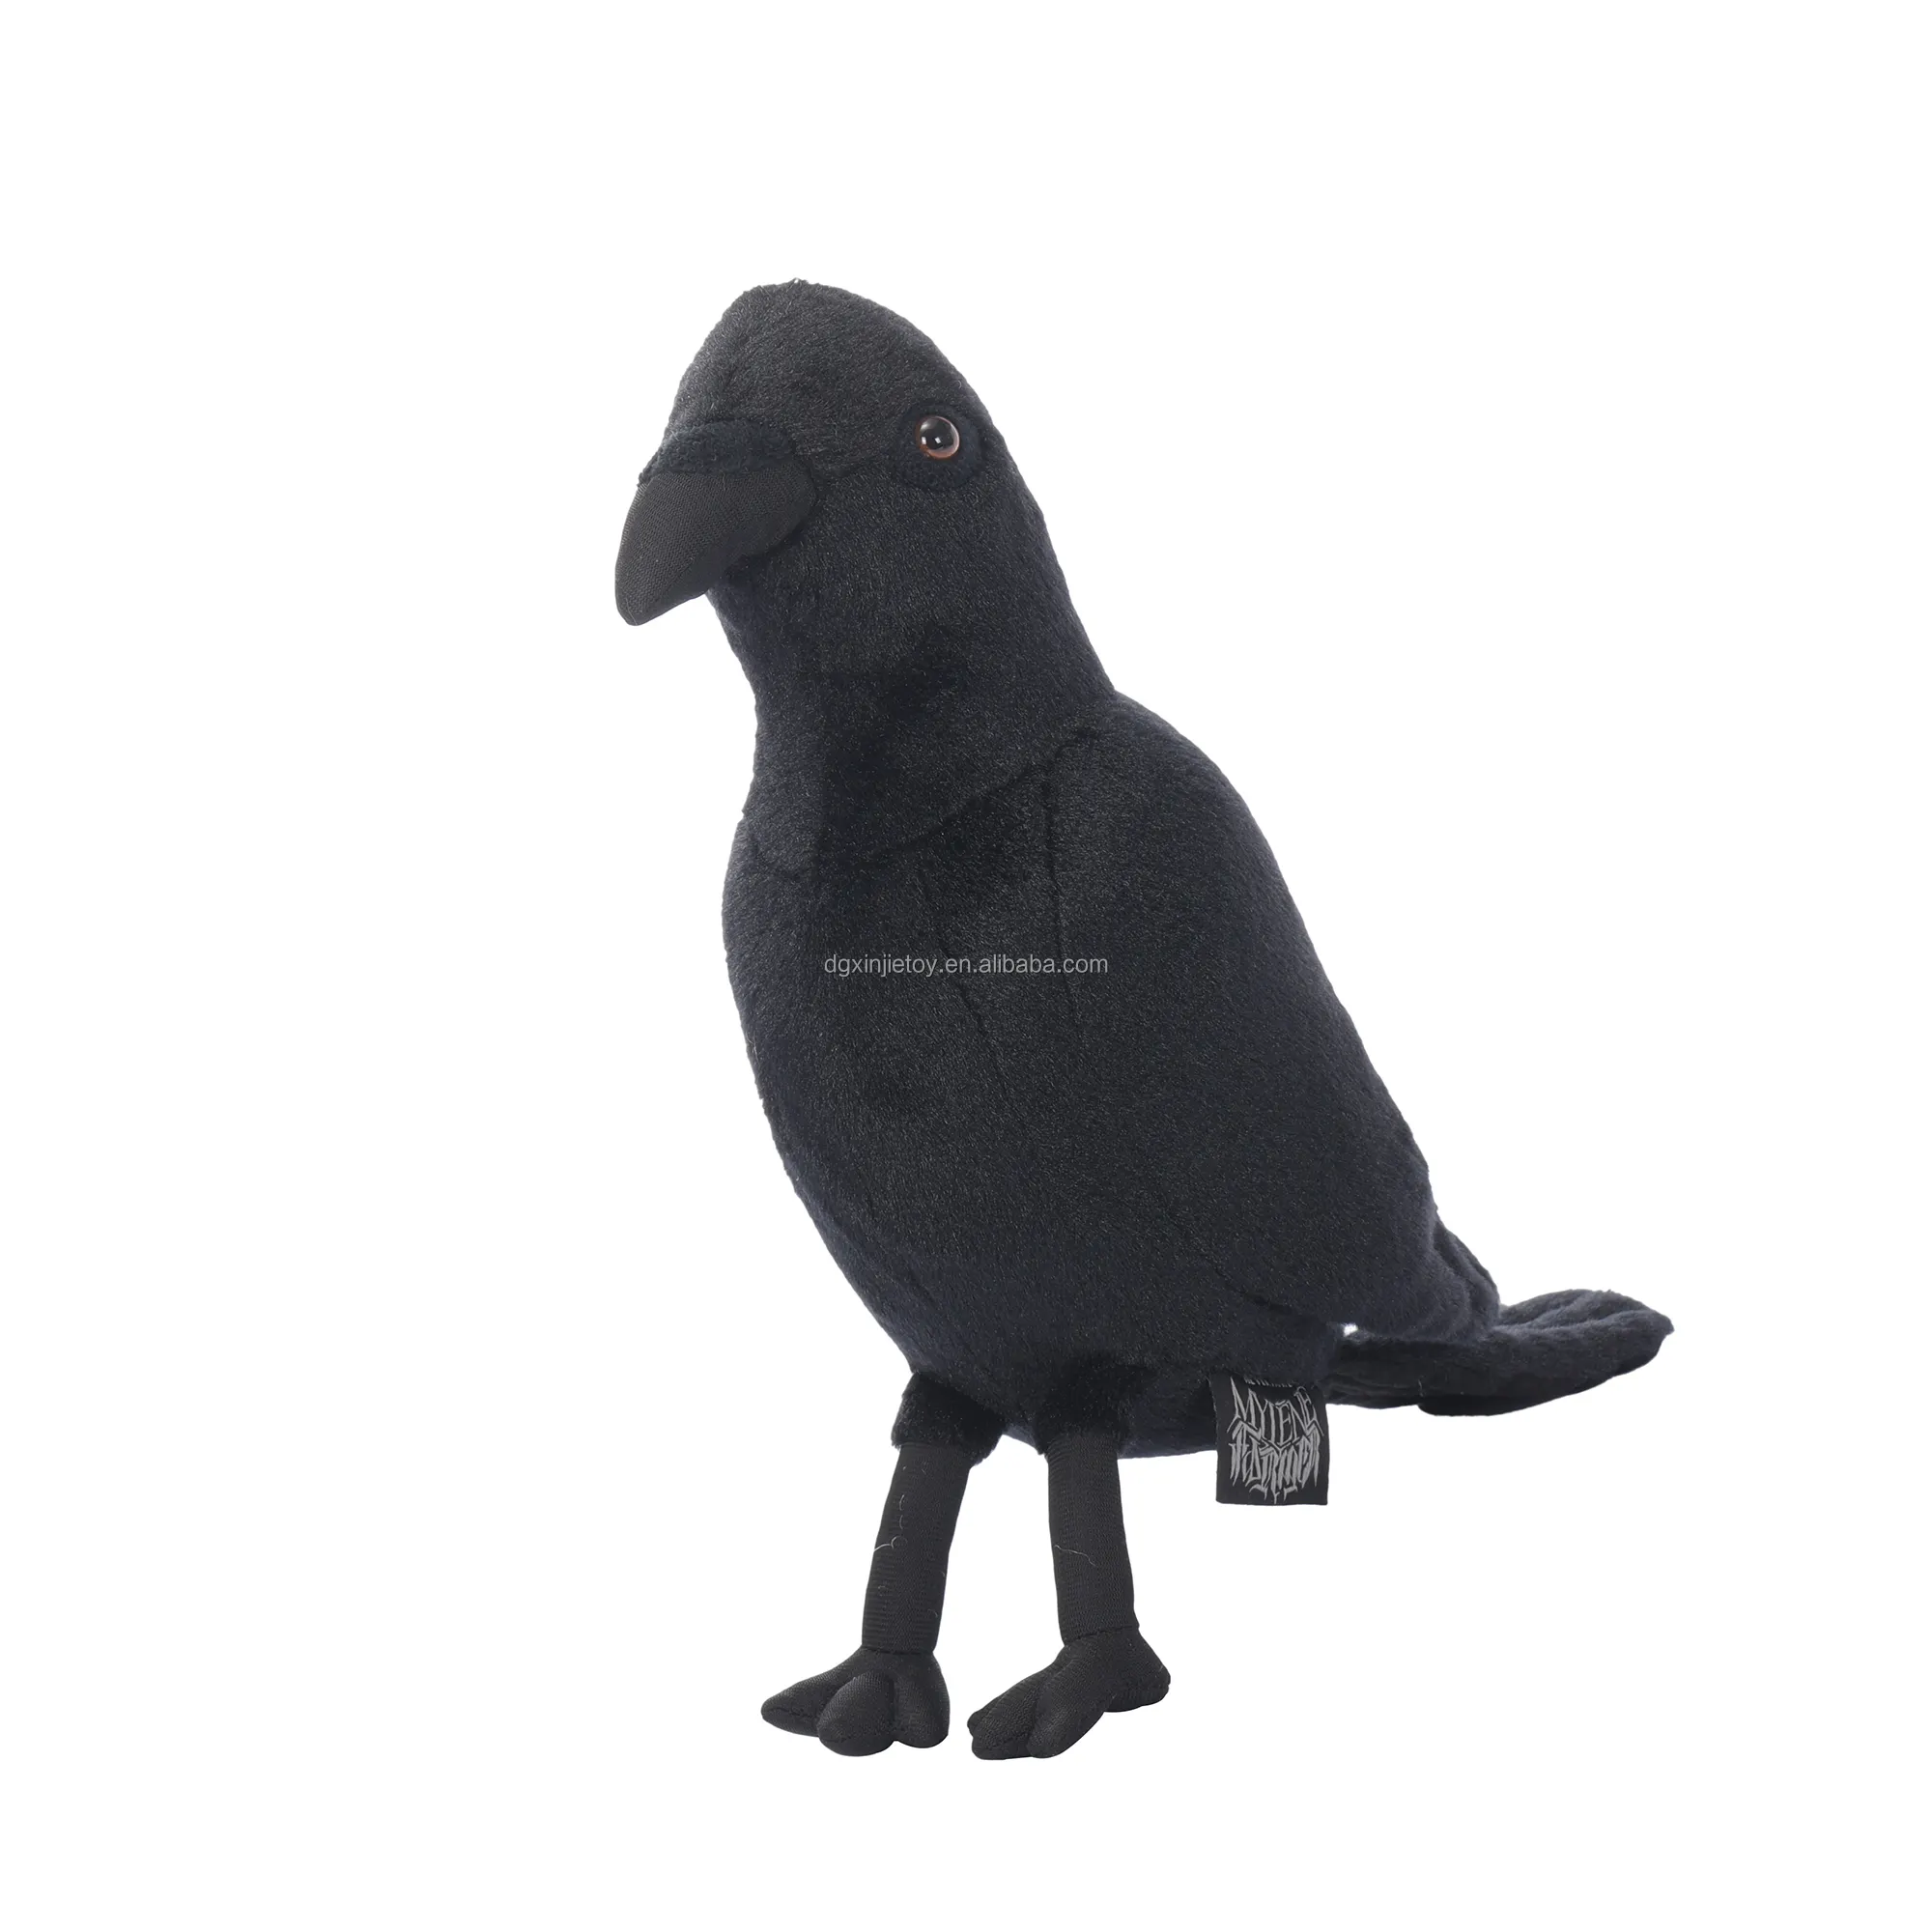 하이 퀄리티 박제 새 동물 장난감 순수한 검은 새 마스코트 인형 새는 아이들을위한 생일 선물입니다